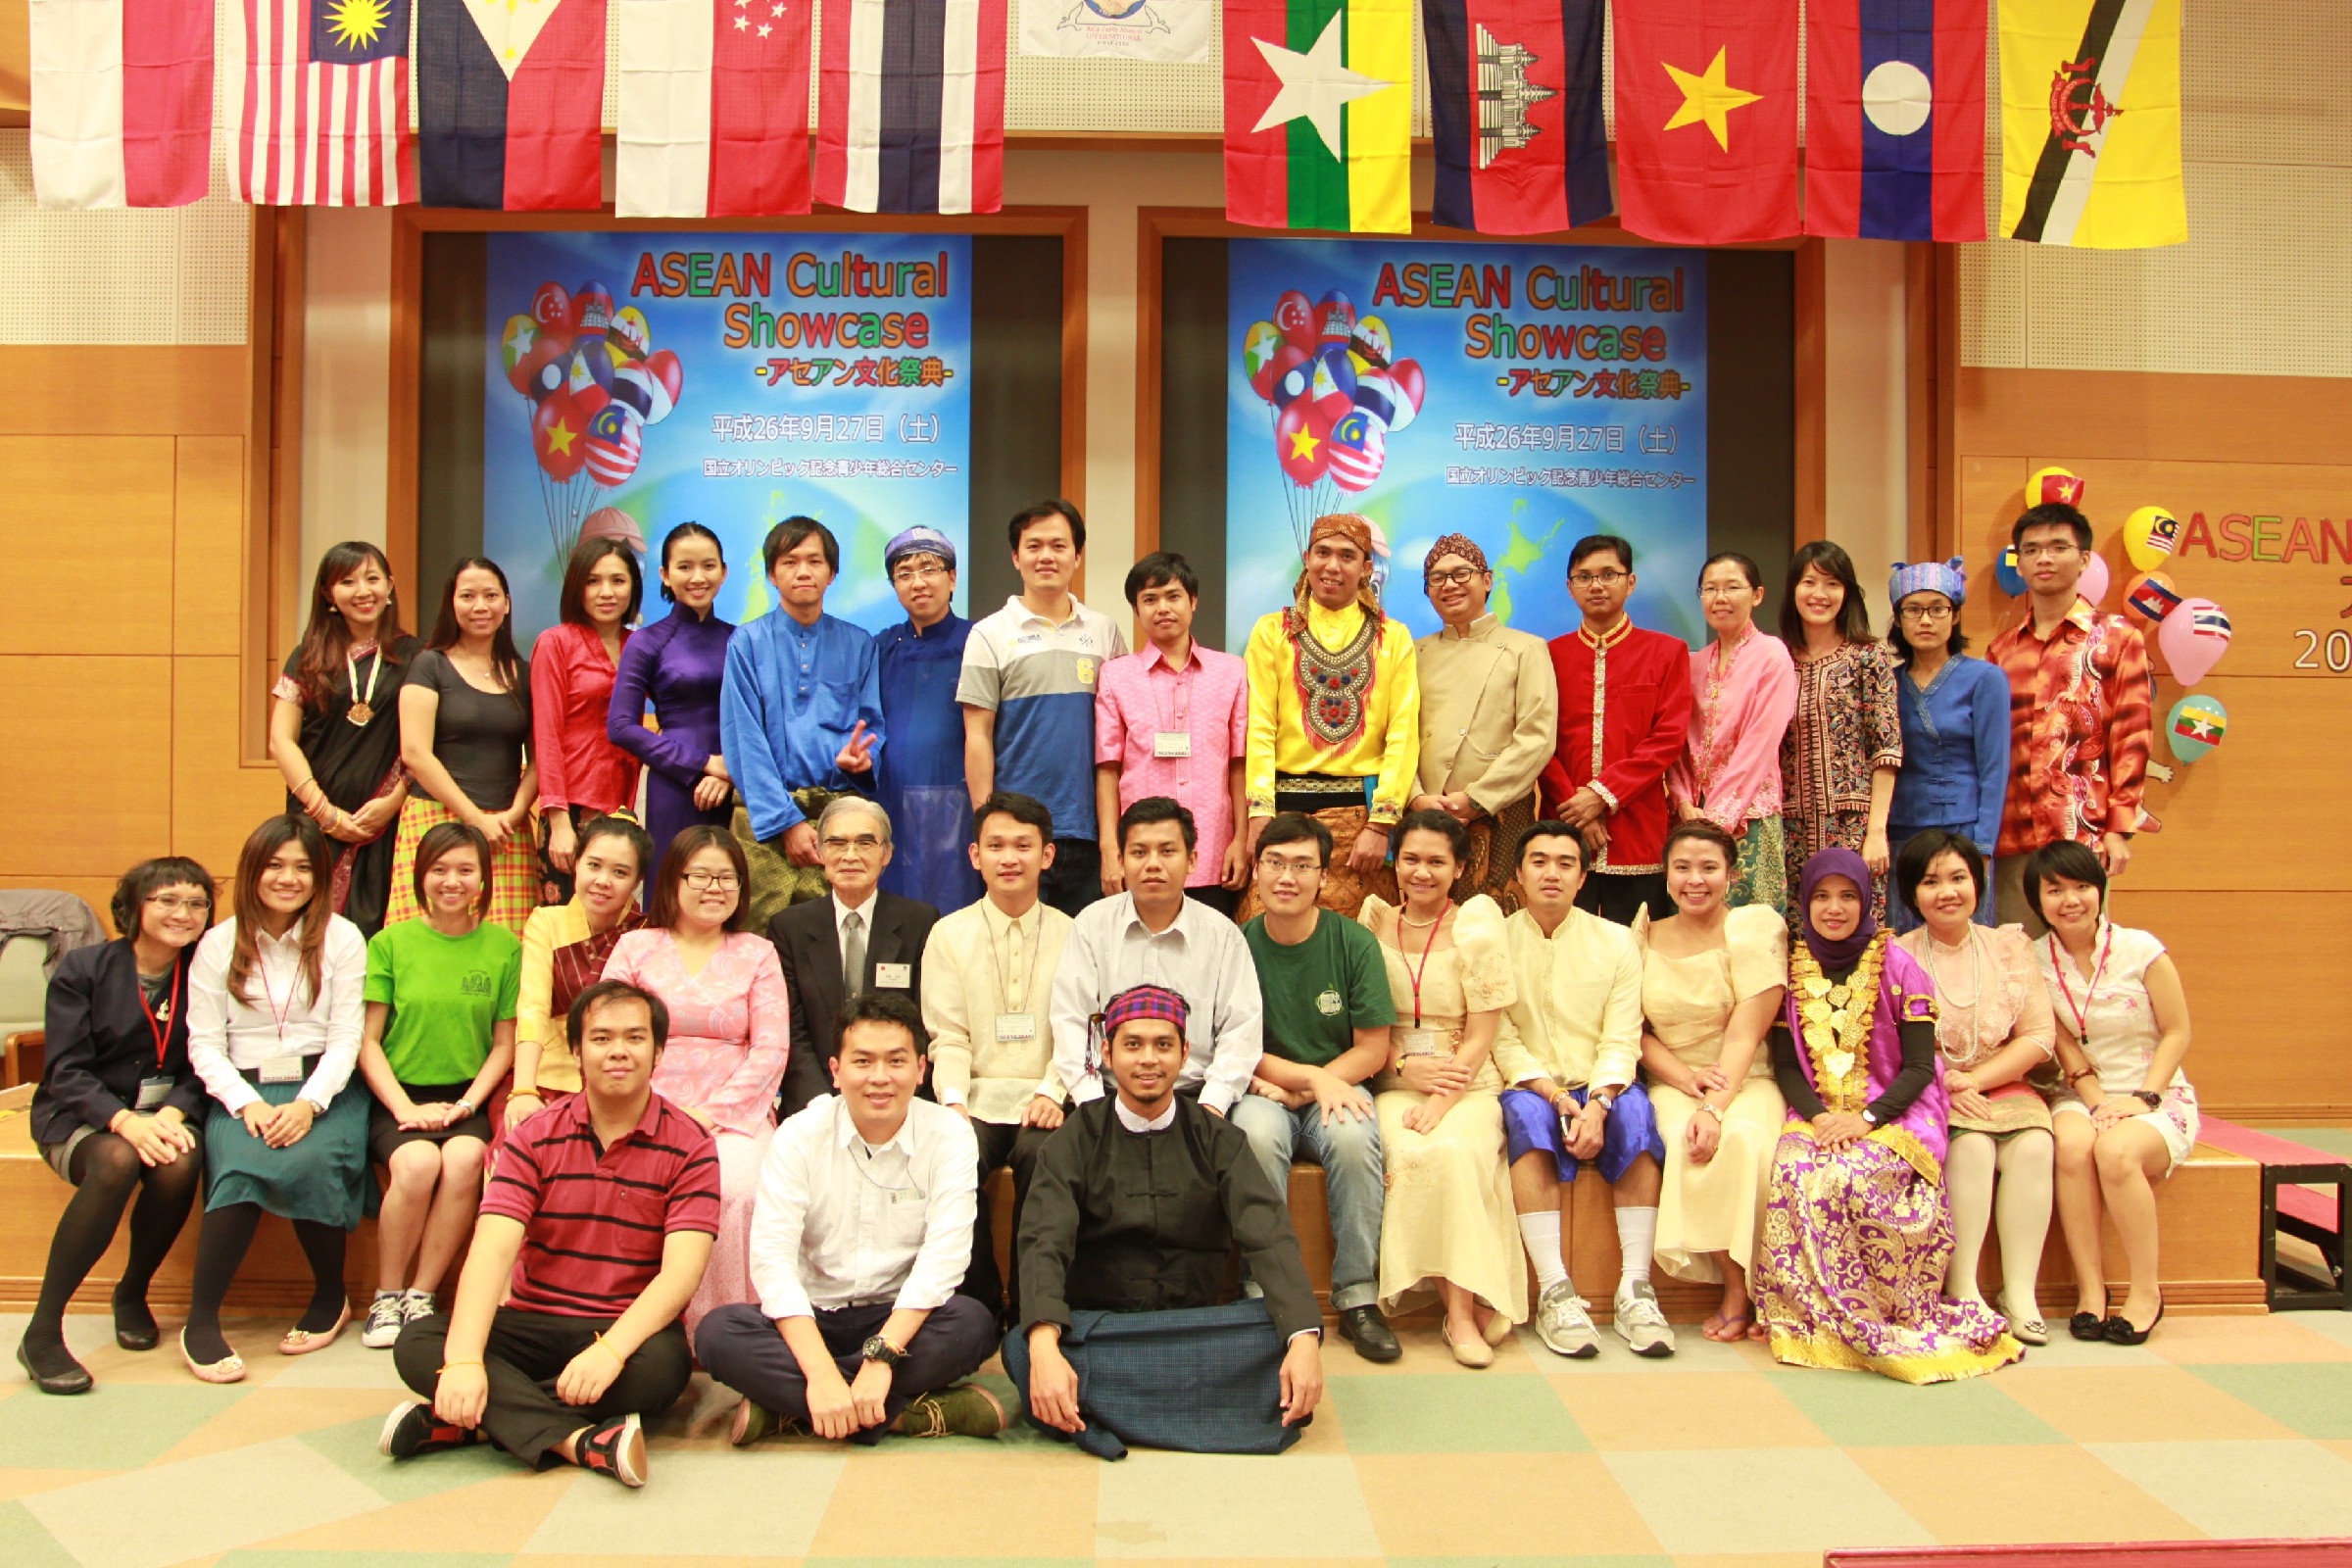 平成26年（2014年)「アセアン文化祭典 ASEAN Cultural Showcase 2014」